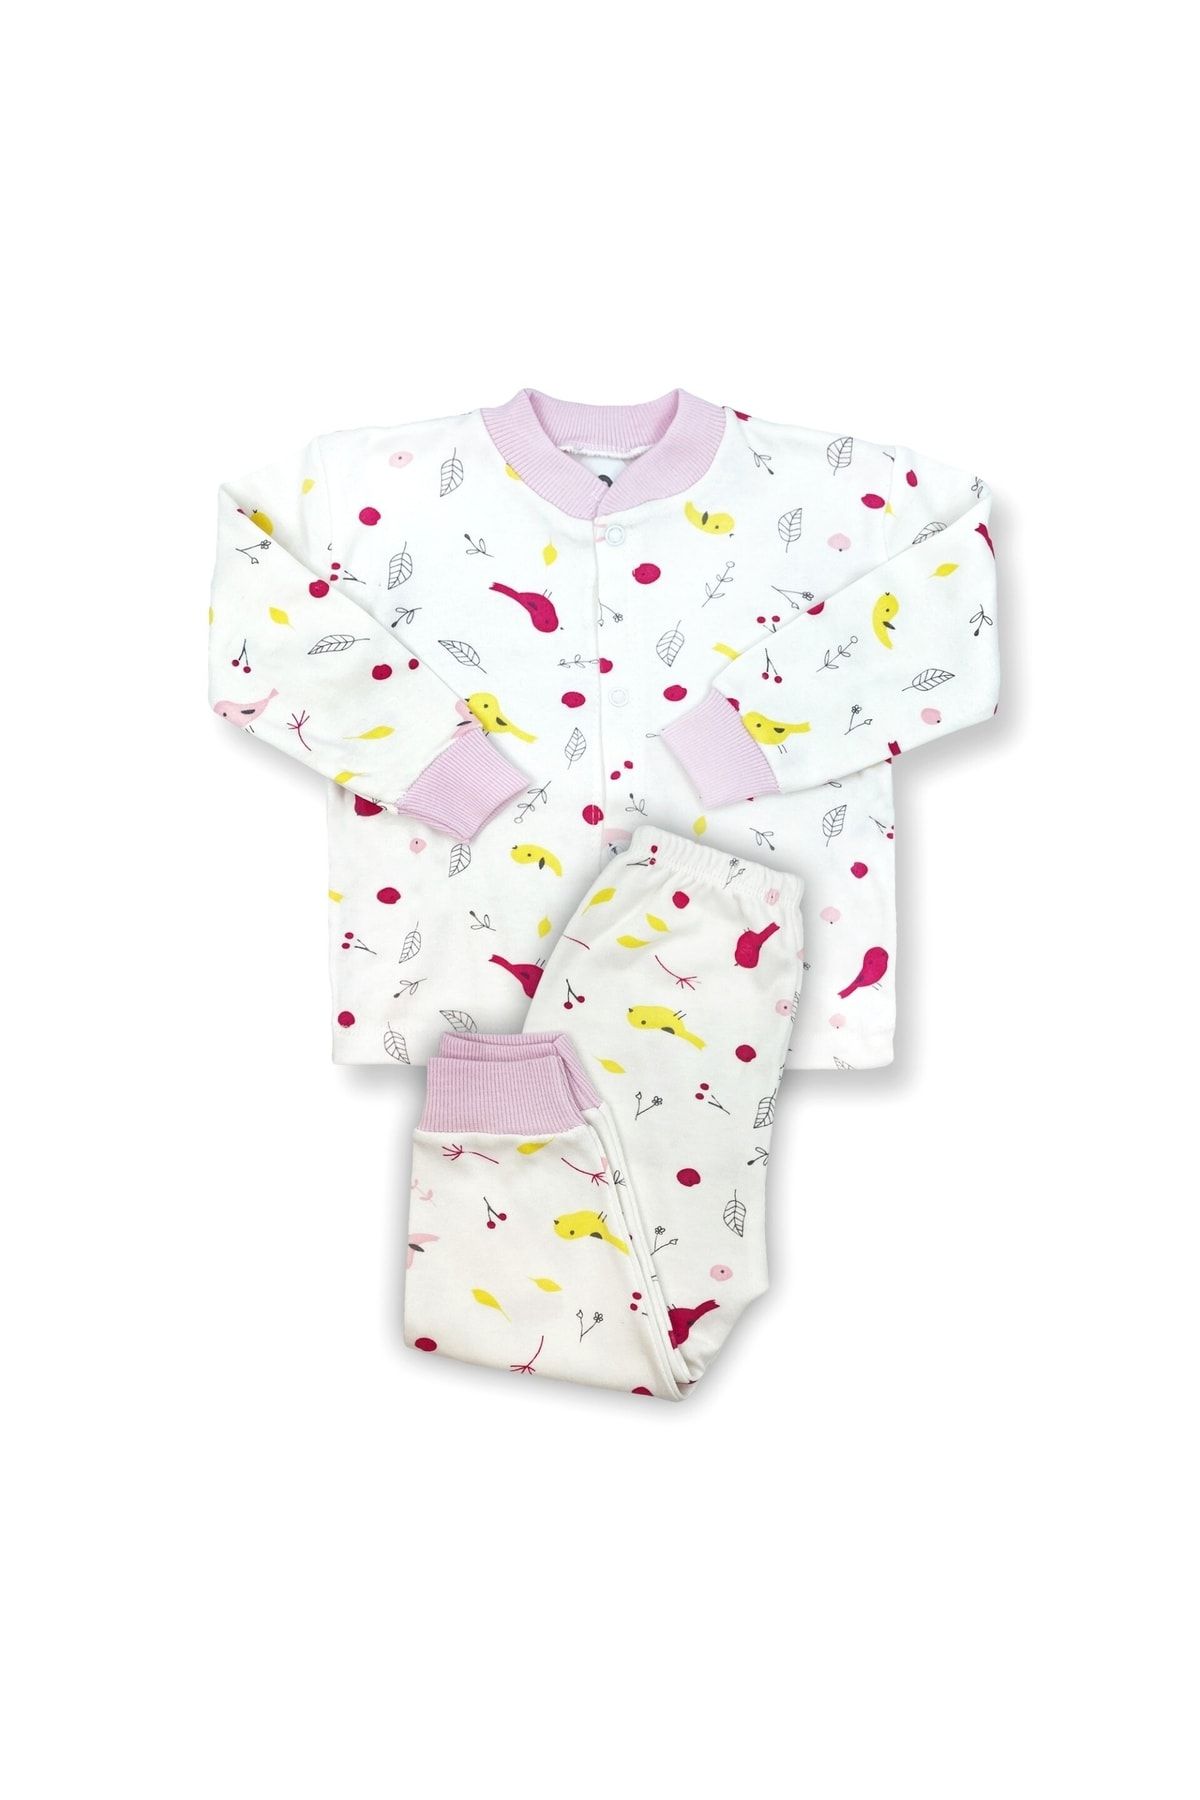 Genel Markalar Sema Baby Happy Birds Bebek Pijama Takımı Pembe 0-3 Ay